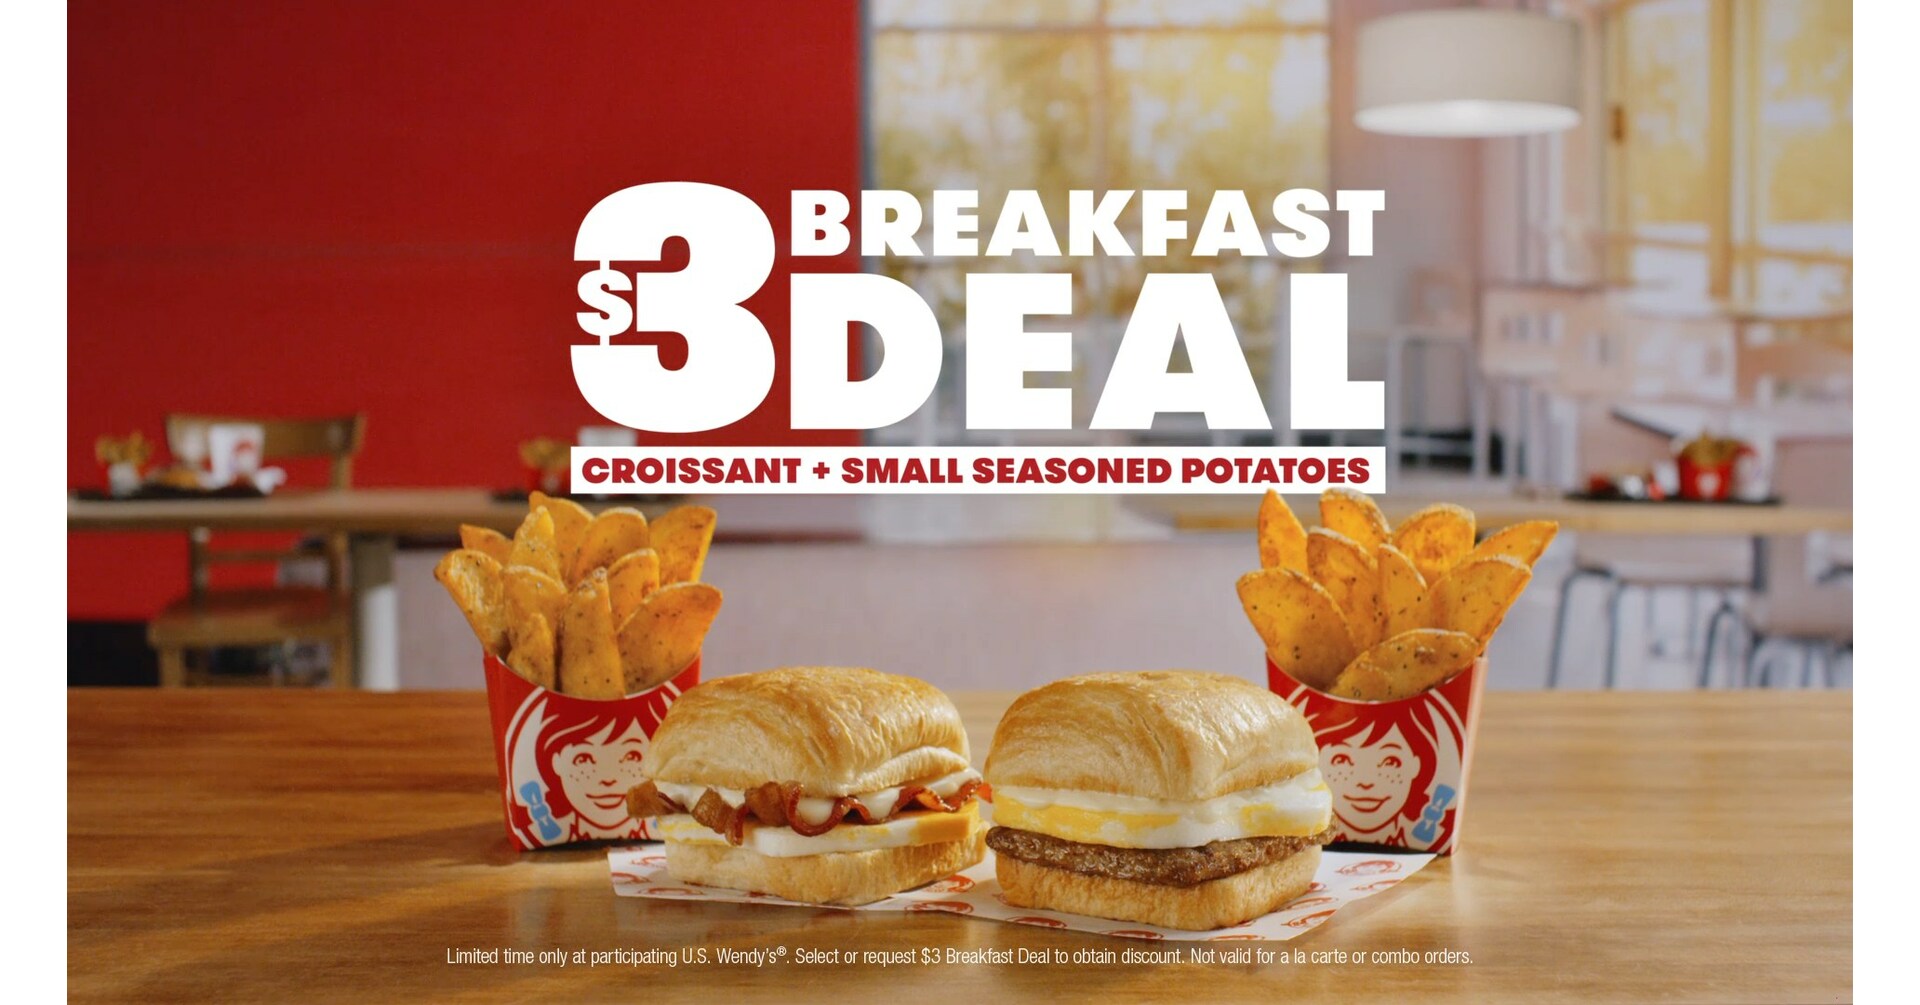 Breakfast deals and discounts